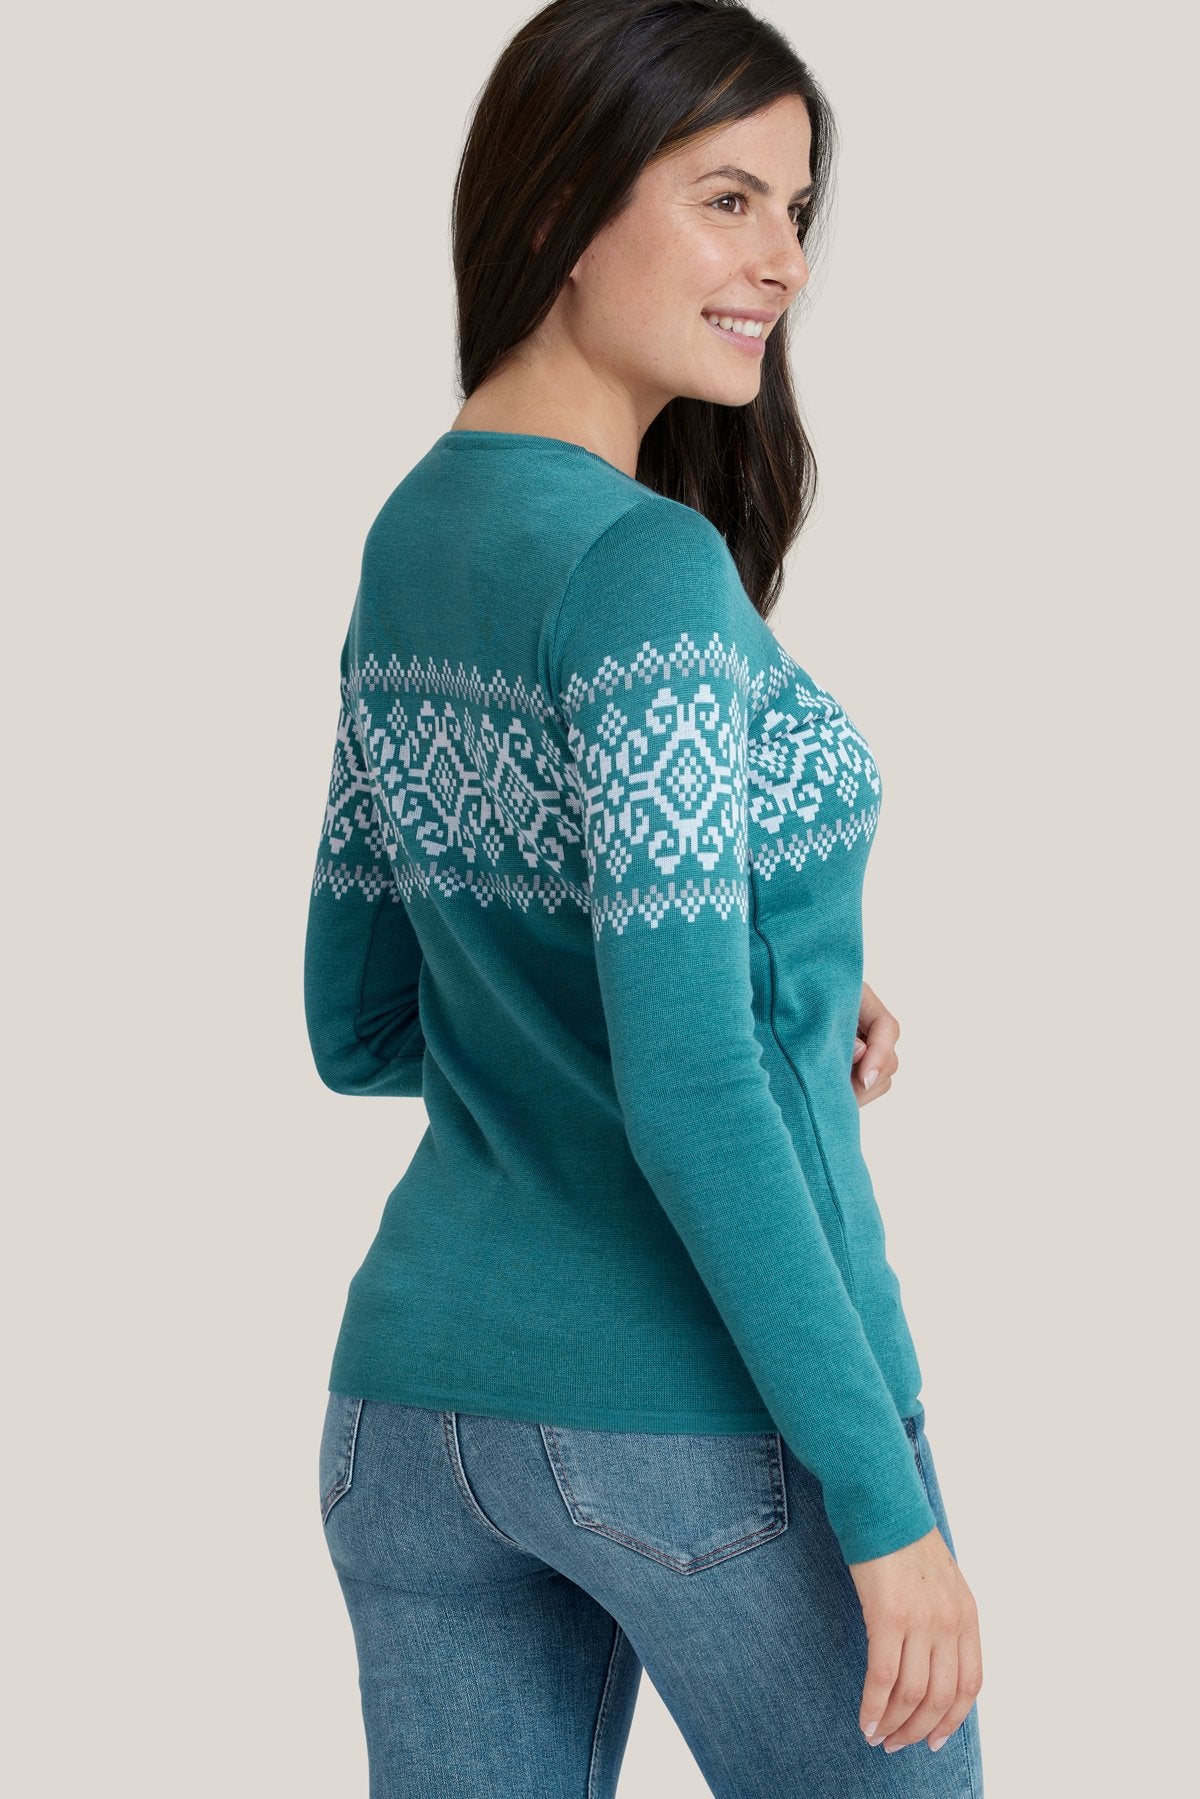 Freya Sweater 0